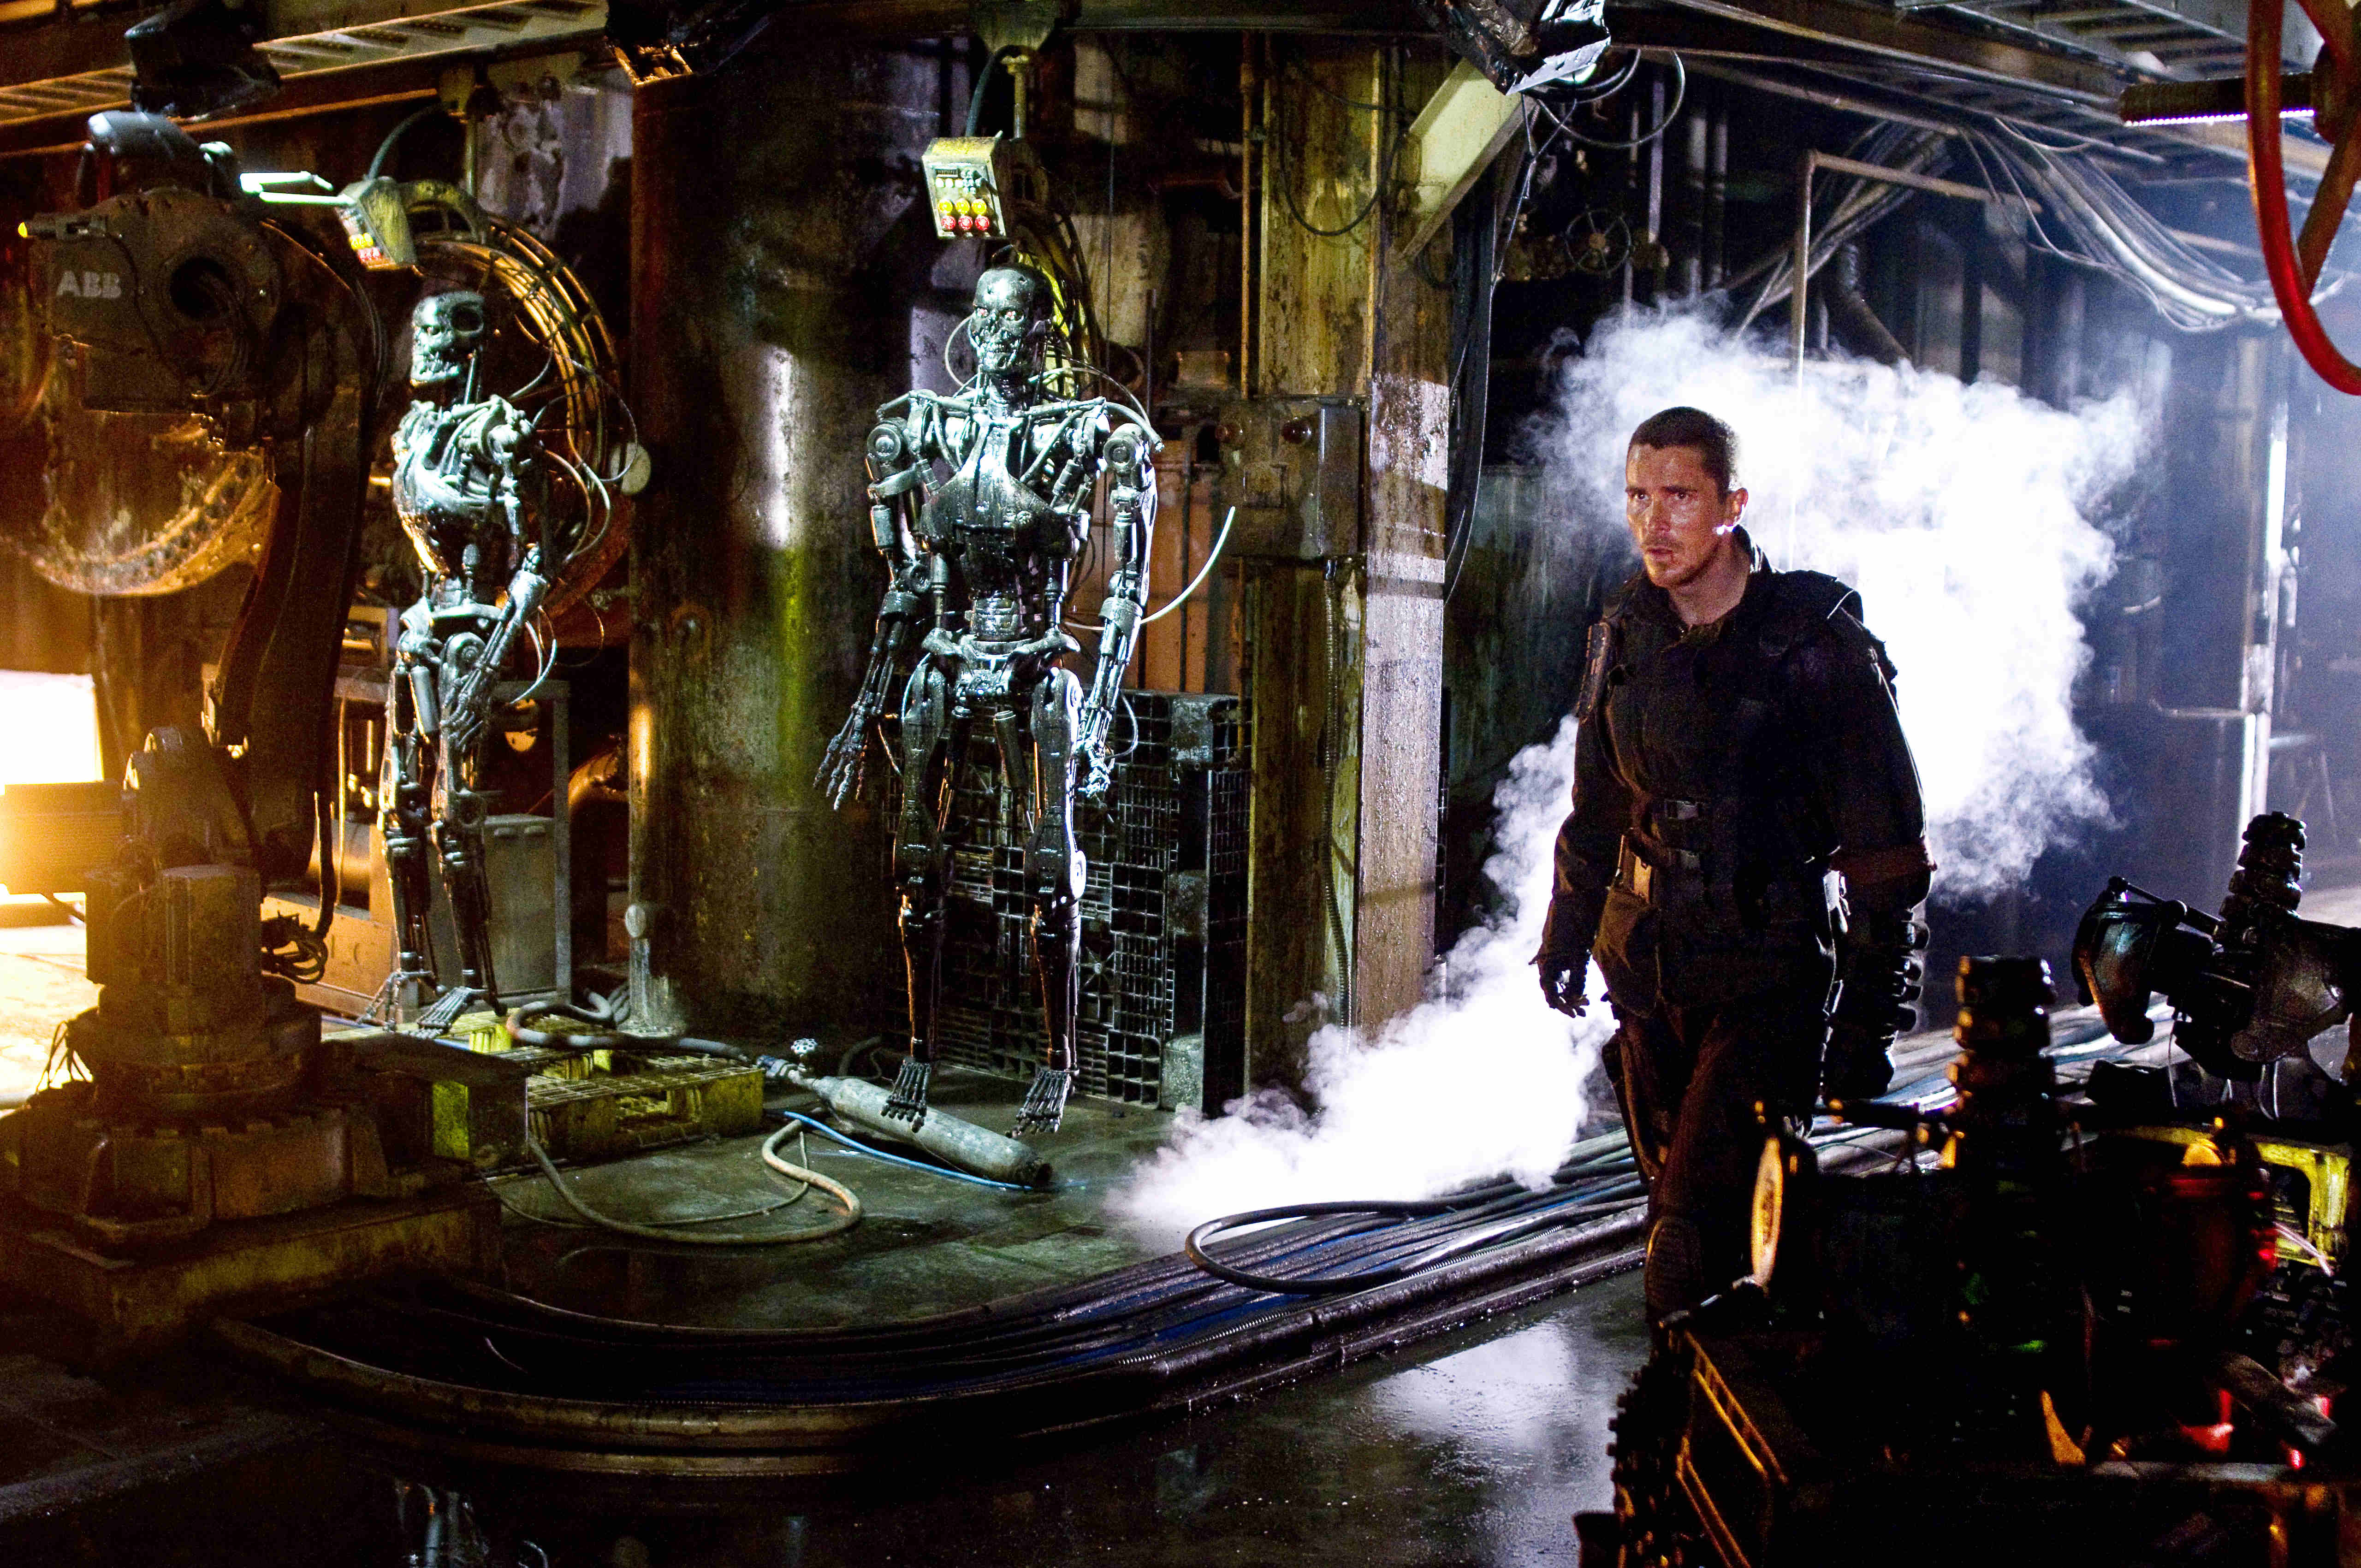 Terminators терминаторы. Терминатор: да придёт Спаситель (2009). Кристиан Бейл Терминатор. Терминатор 4 да придёт Спаситель 2009. Терминатор да придет Спаситель Кристиан Бэйл.